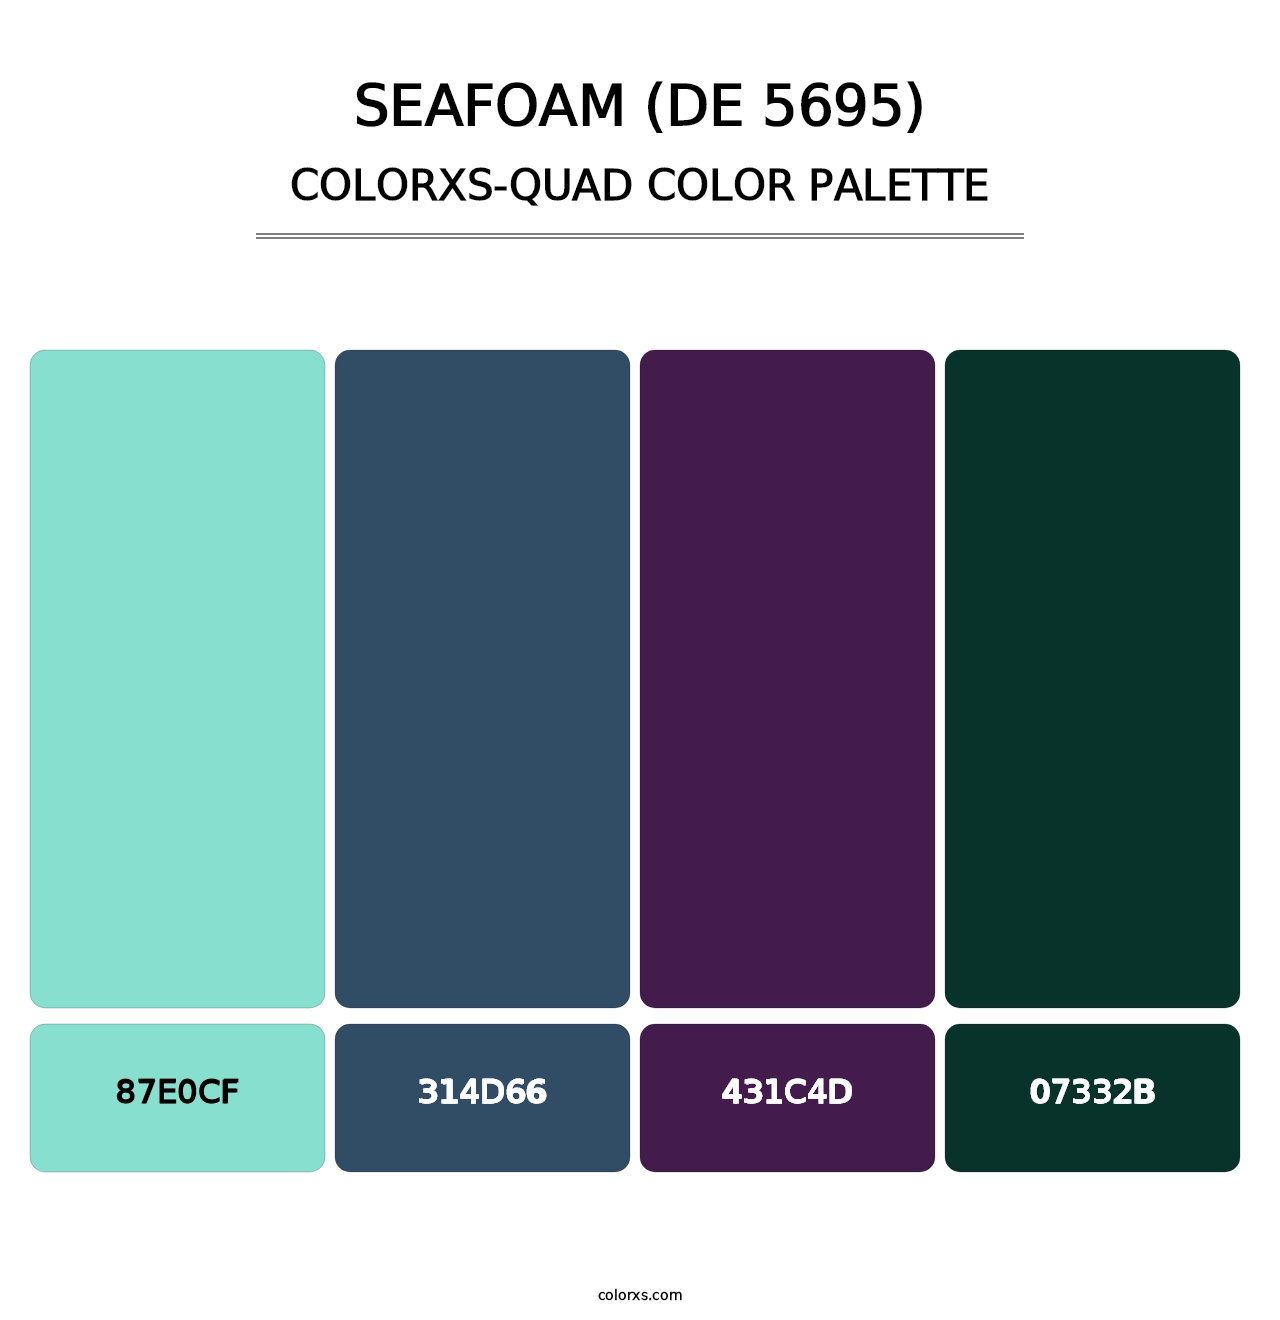 Seafoam (DE 5695) - Colorxs Quad Palette